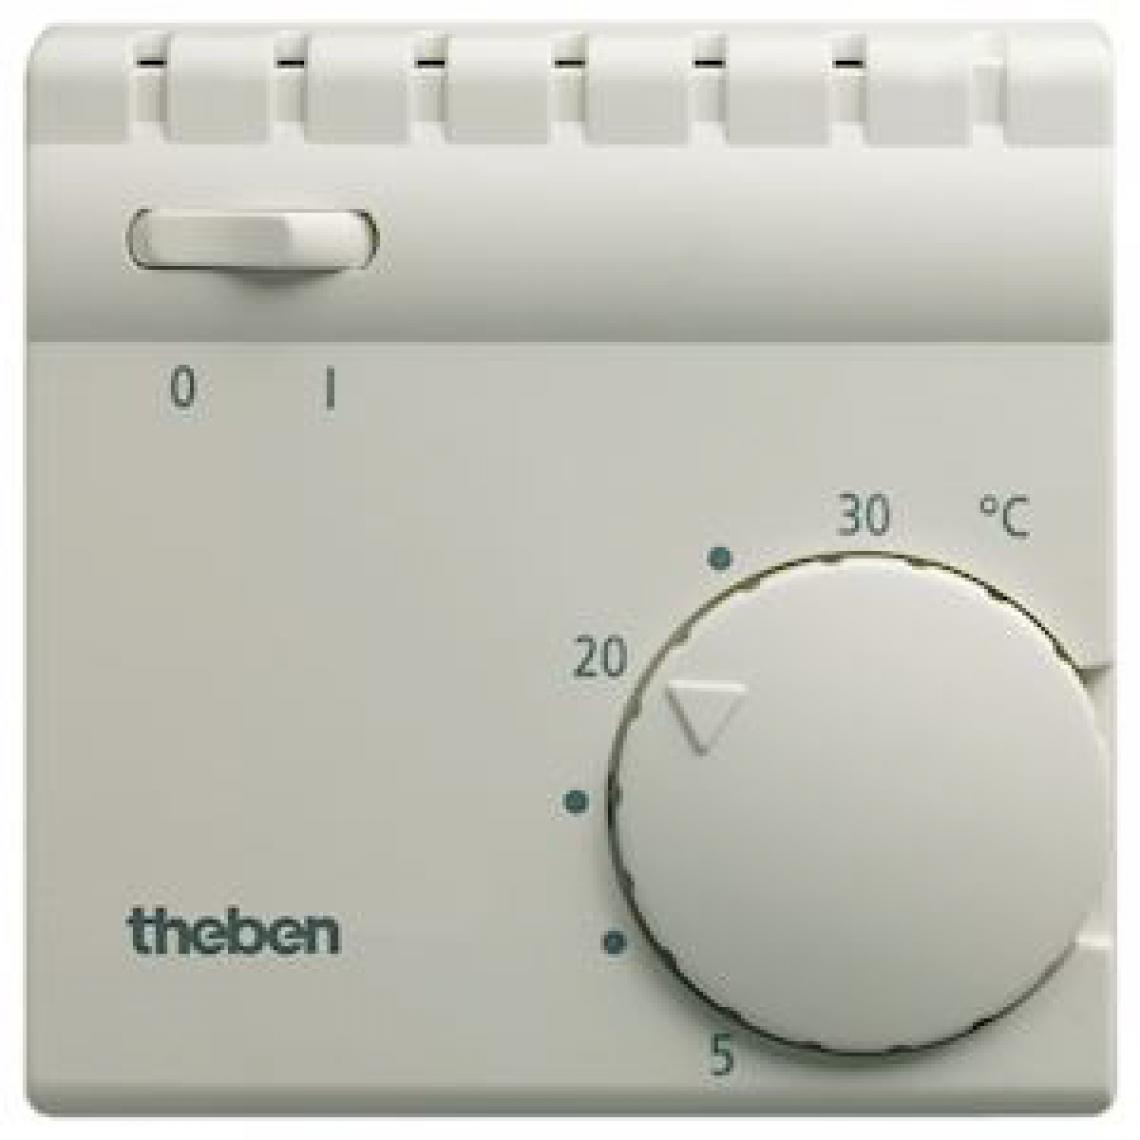 Theben - thermostat ambiance - 1 contact no - avec interrupteur marche / arret - theben 7050001 - Programmateurs